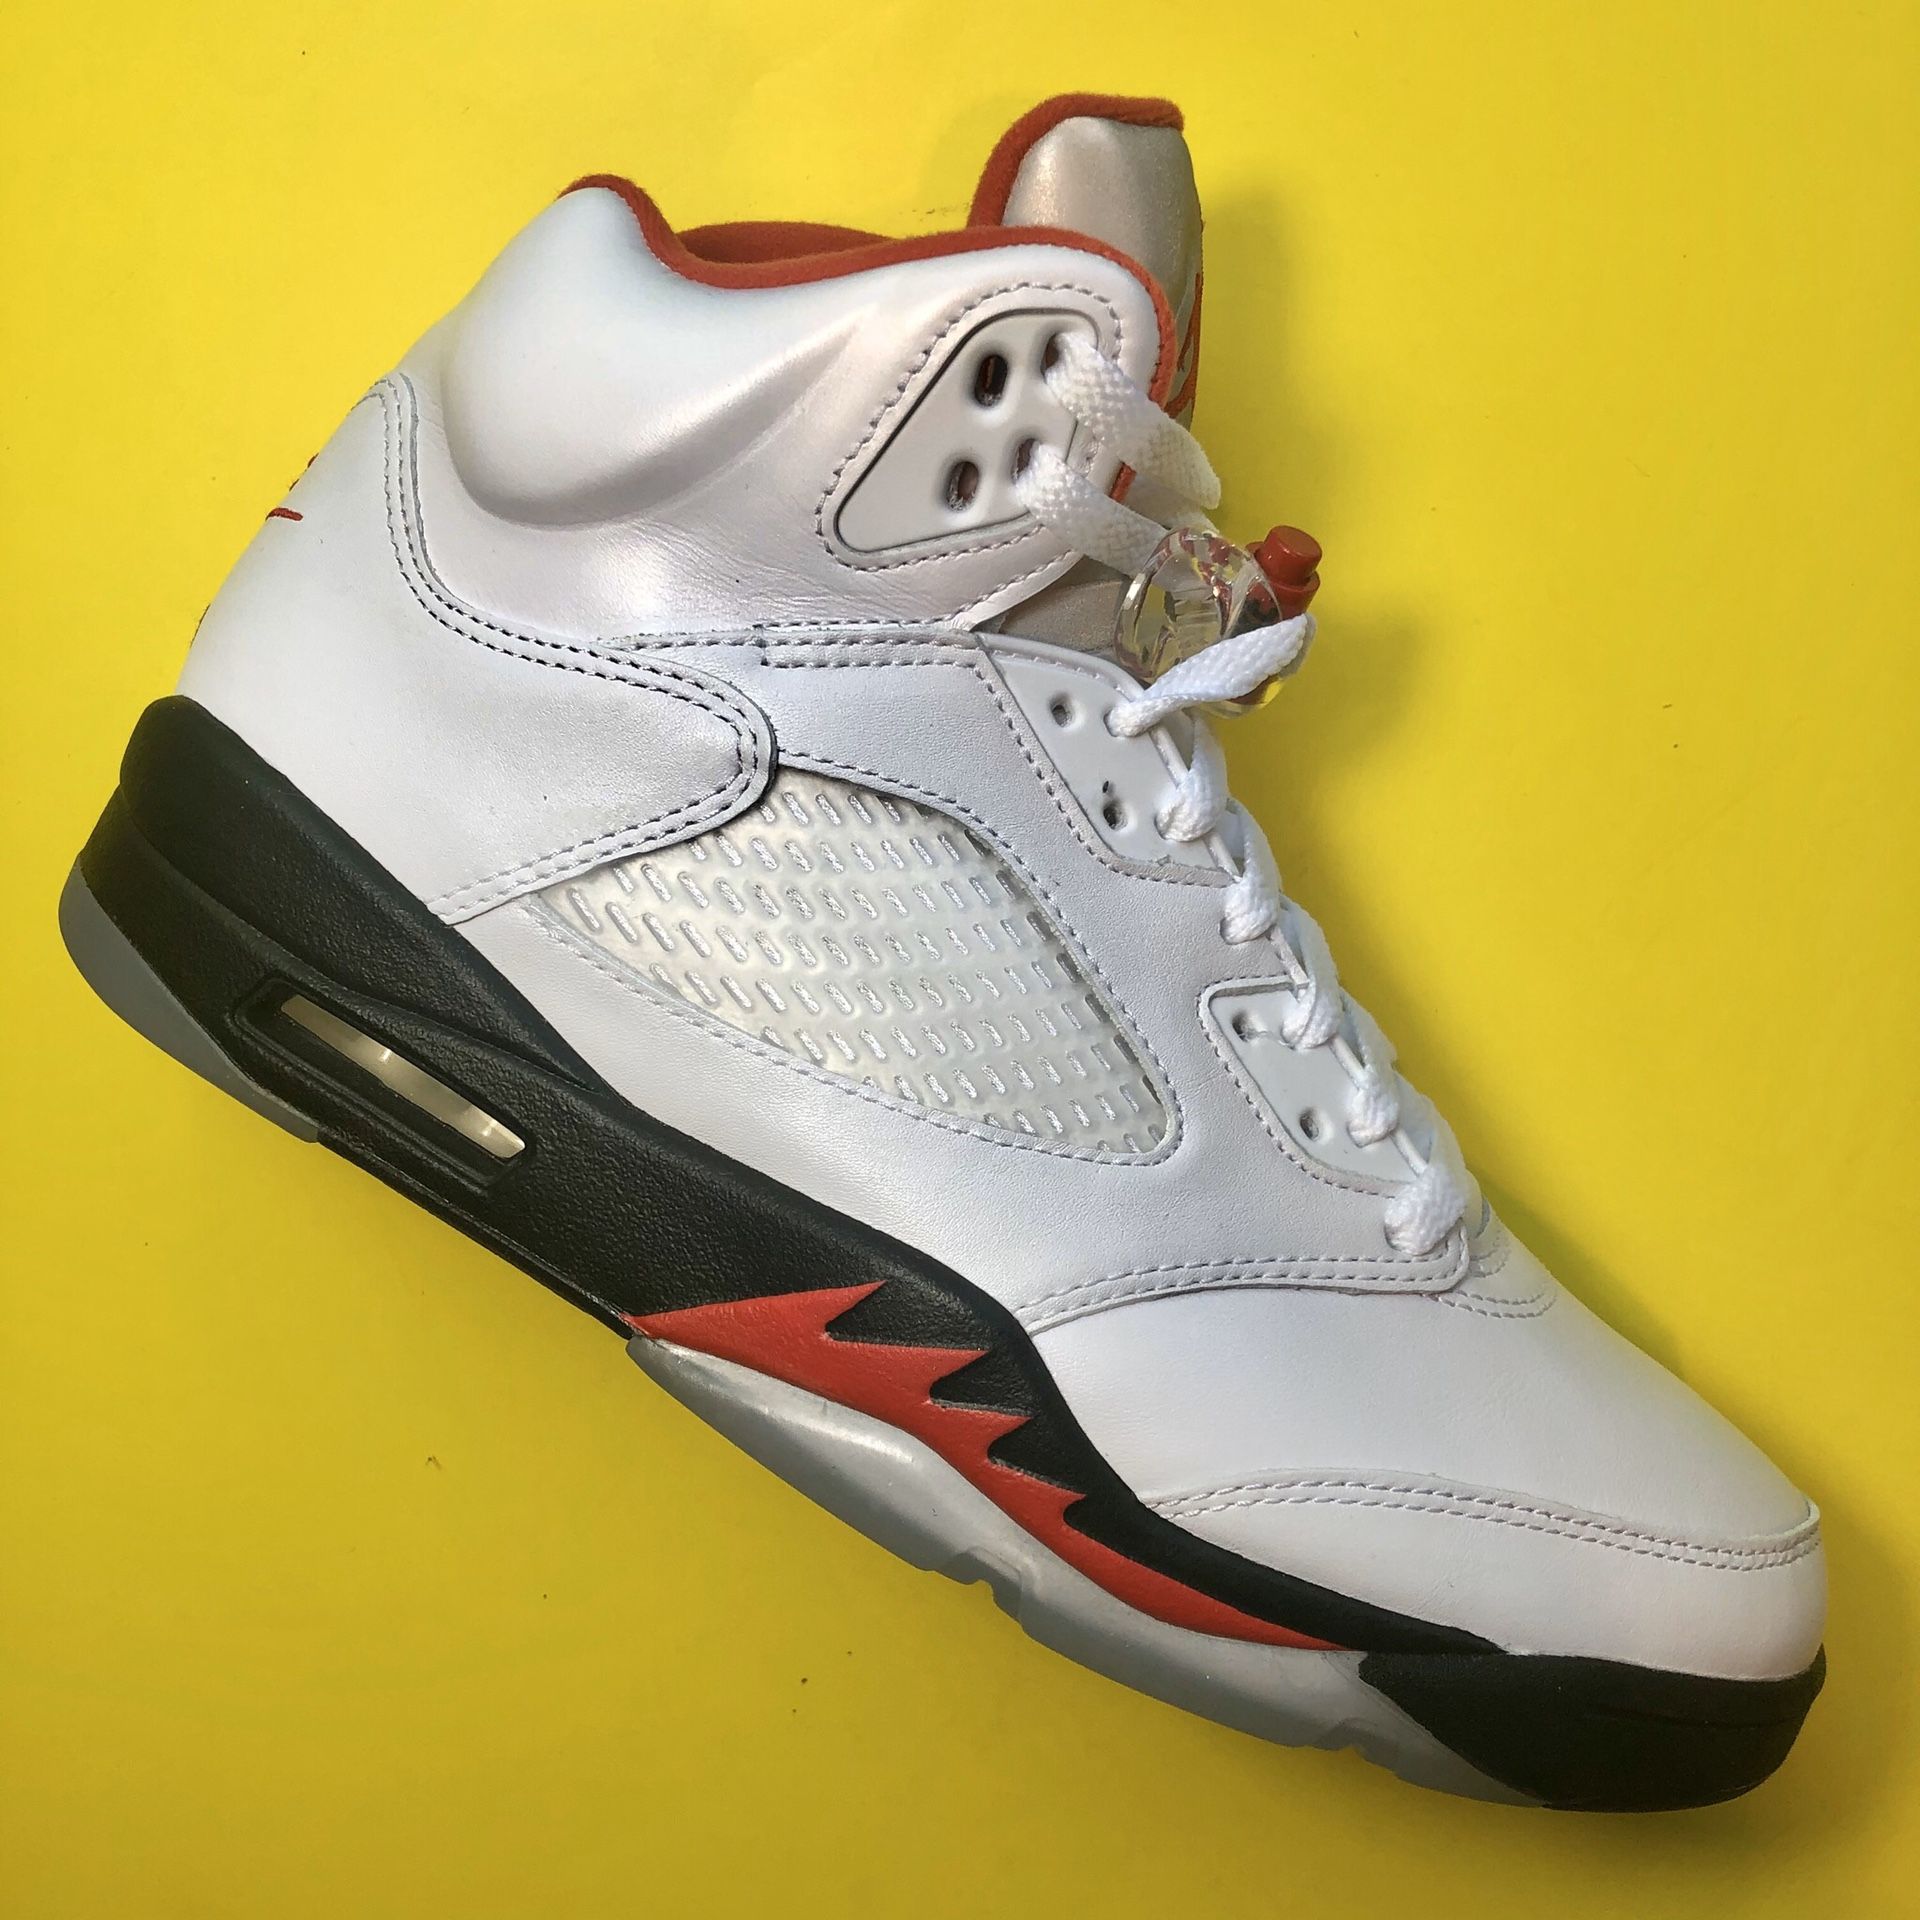 Jordan 5 ‘Fire Red’ - Size 9